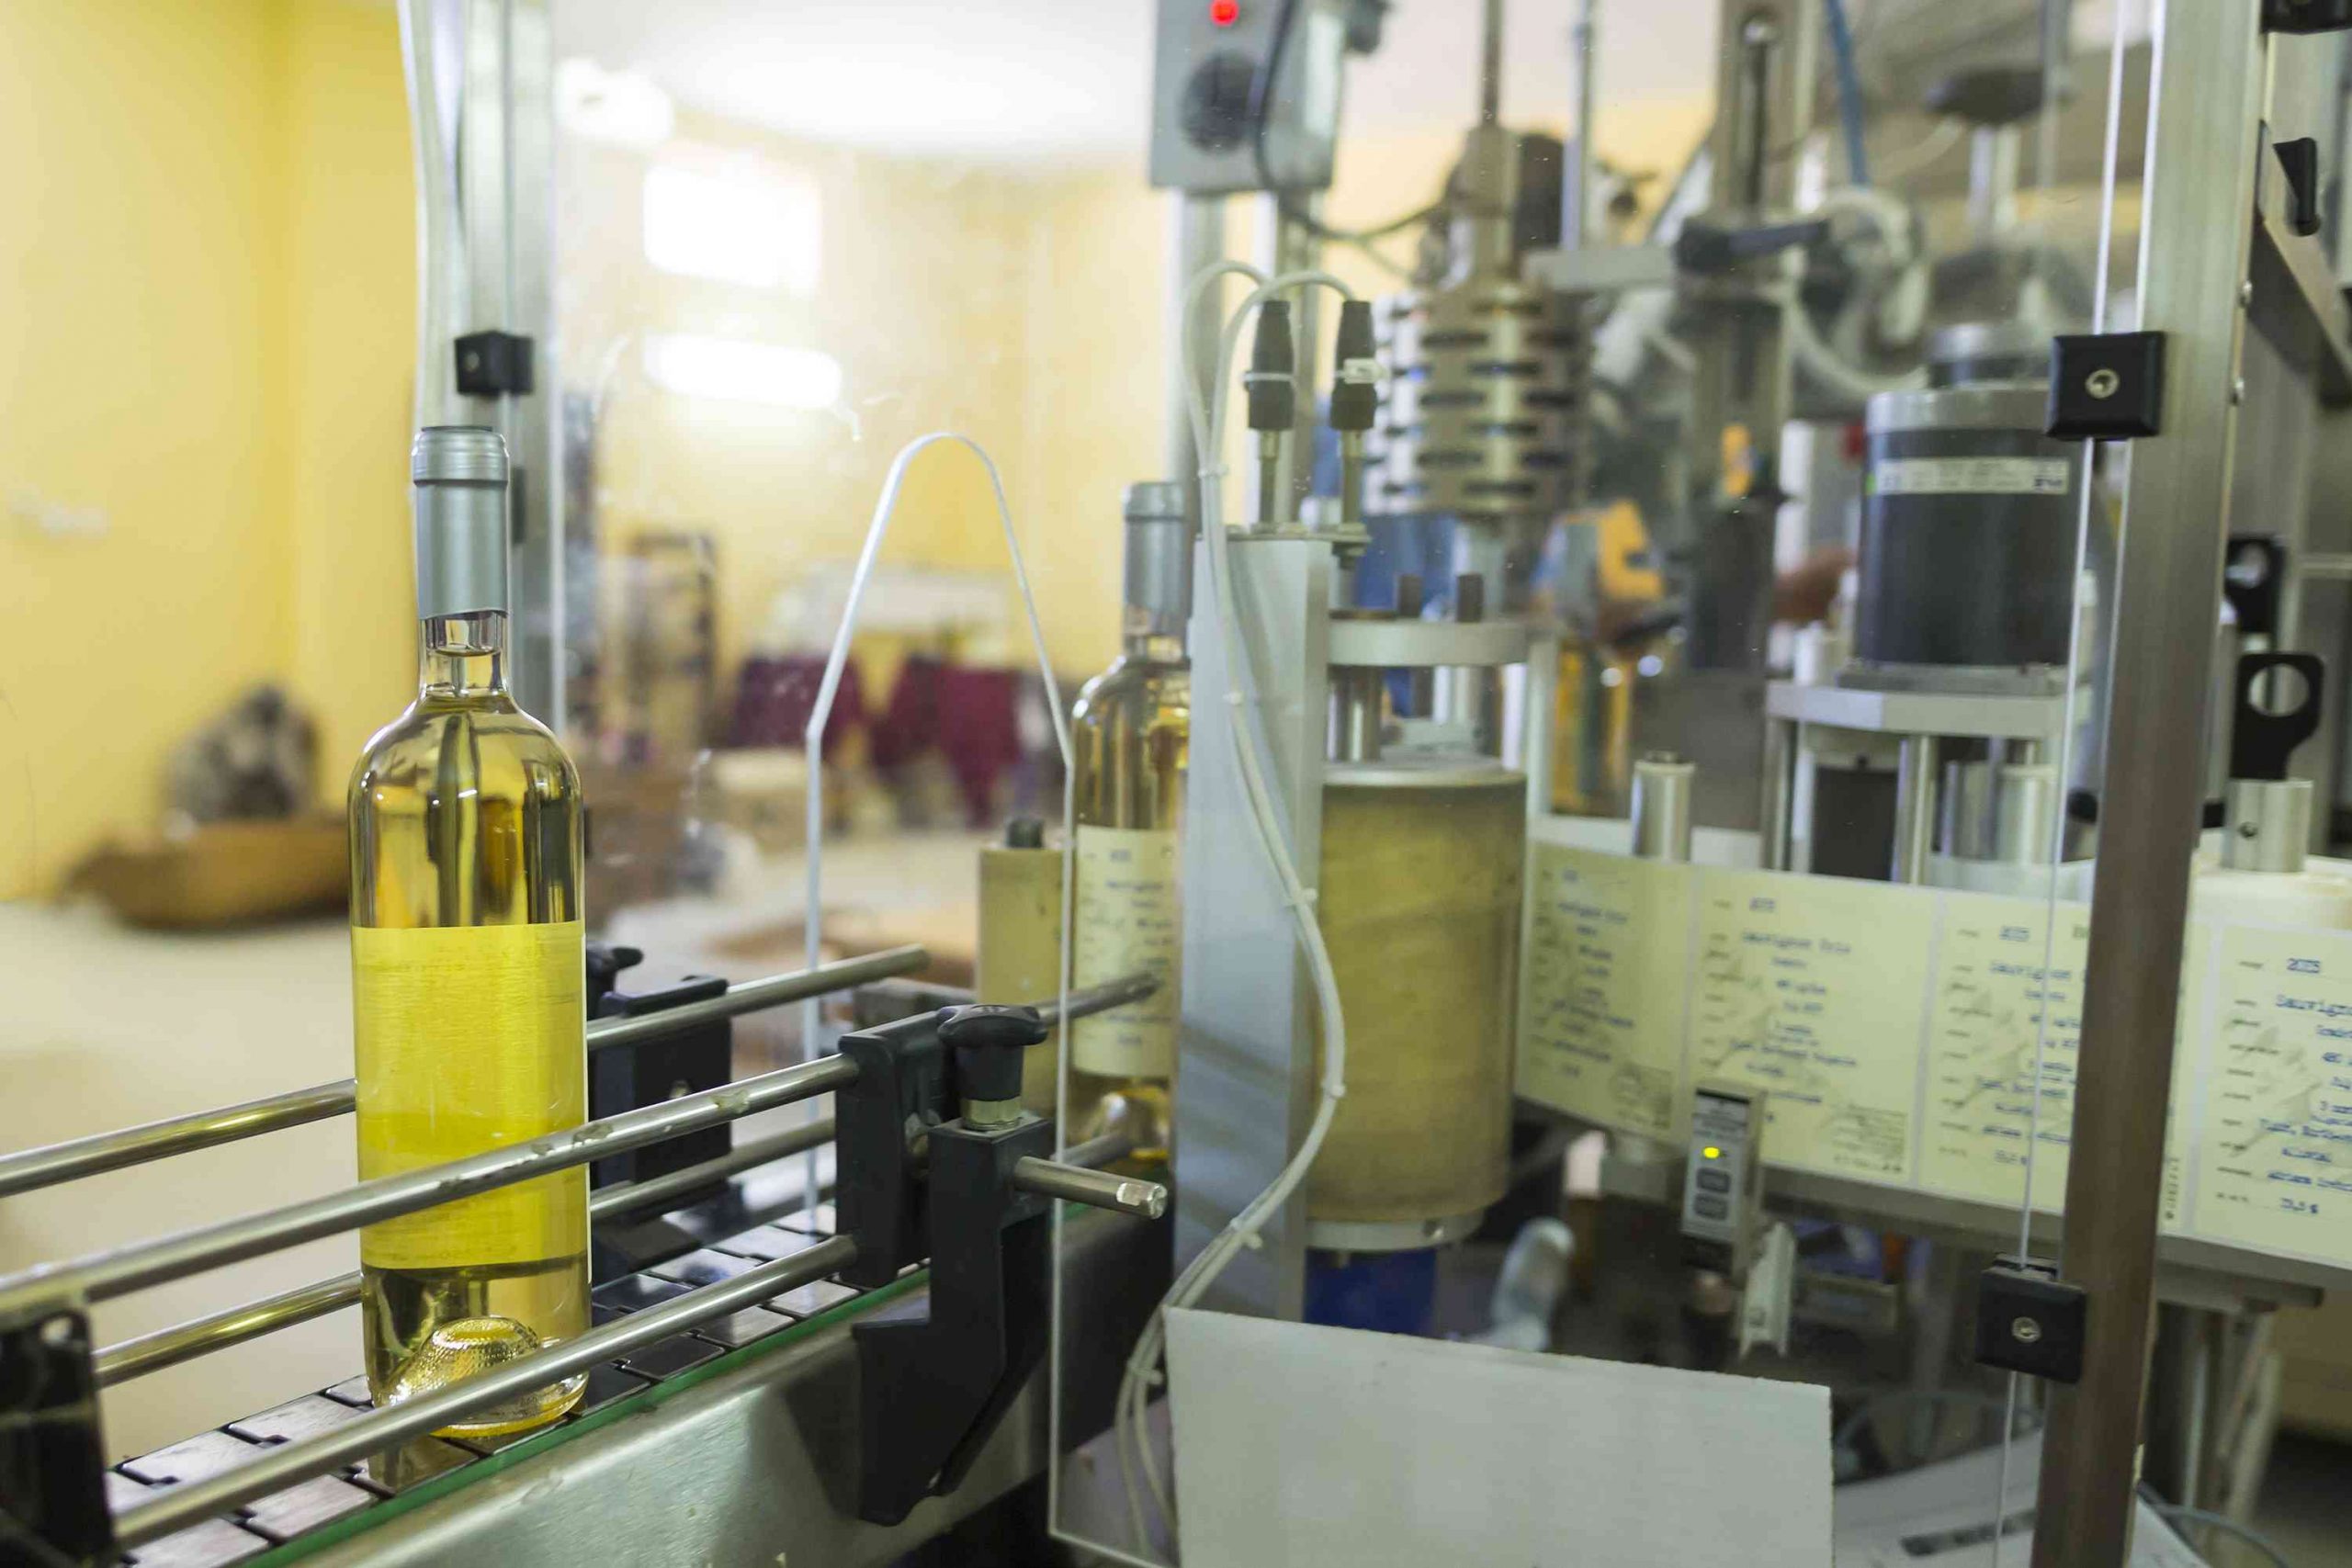 葡萄酒酒瓶在酒厂的标签加工机器中移动gydF4y2Ba